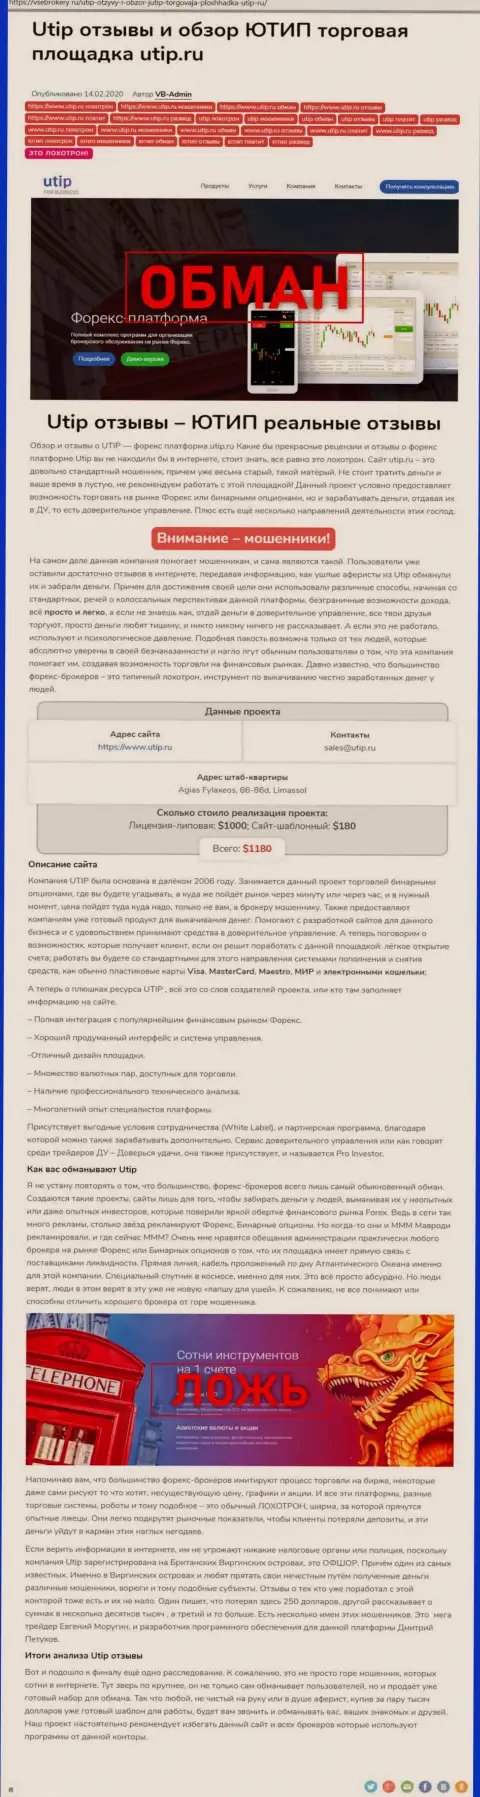 Обзор scam-компании UTIP Technologies Ltd - это ОБМАНЩИКИ !!!